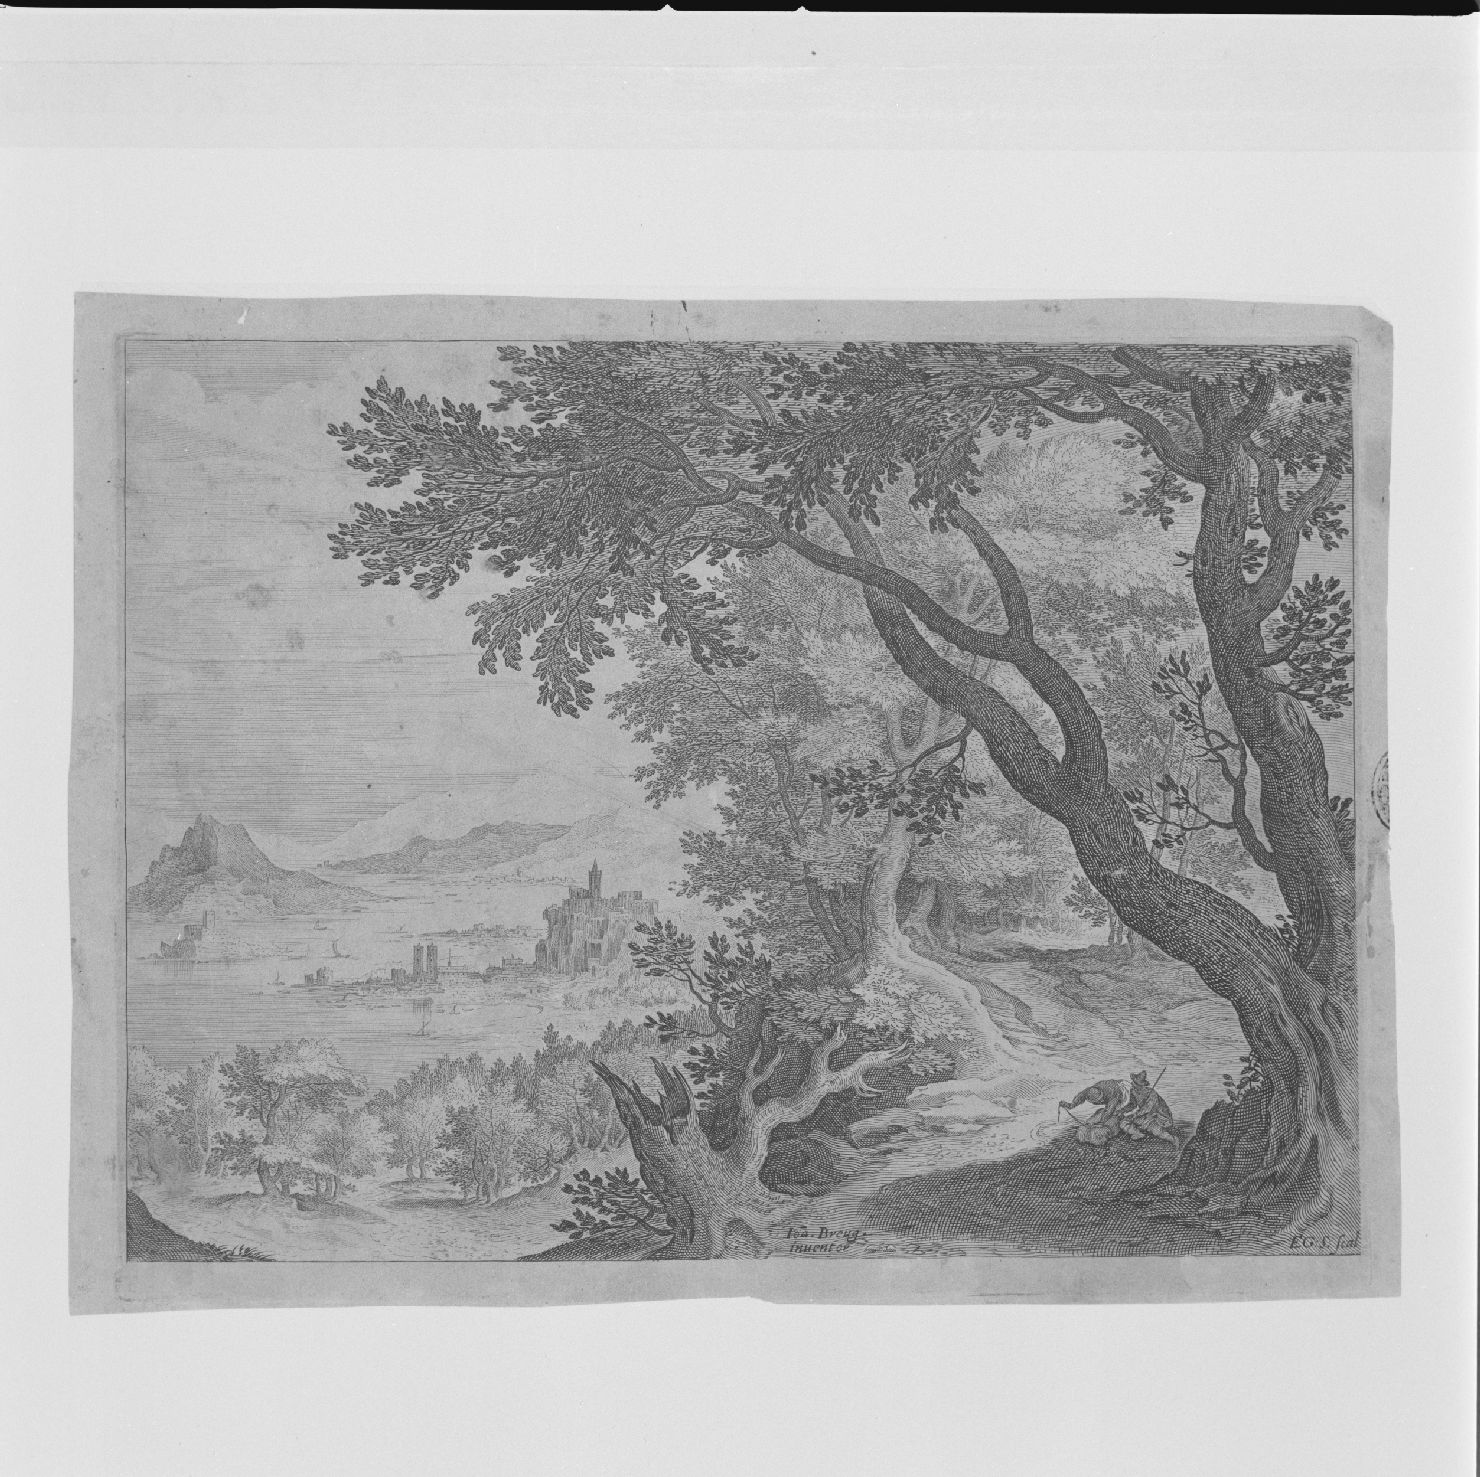 paesaggio con alberi e viandanti (stampa) di Sadeler Gillis il Giovane, Bruegel Jan il Vecchio detto Bruegel dei Velluti (secc. XVI/ XVII)